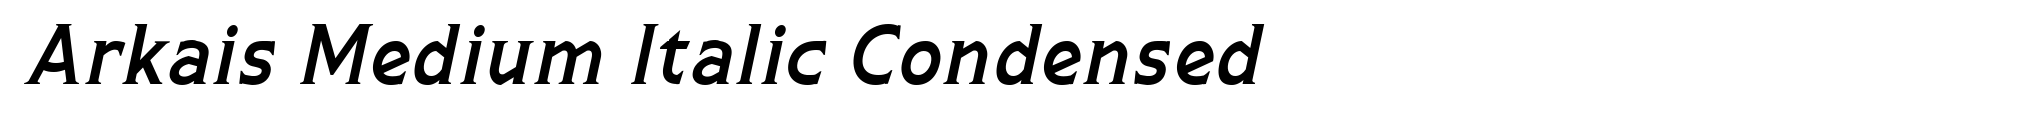 Arkais Medium Italic Condensed image